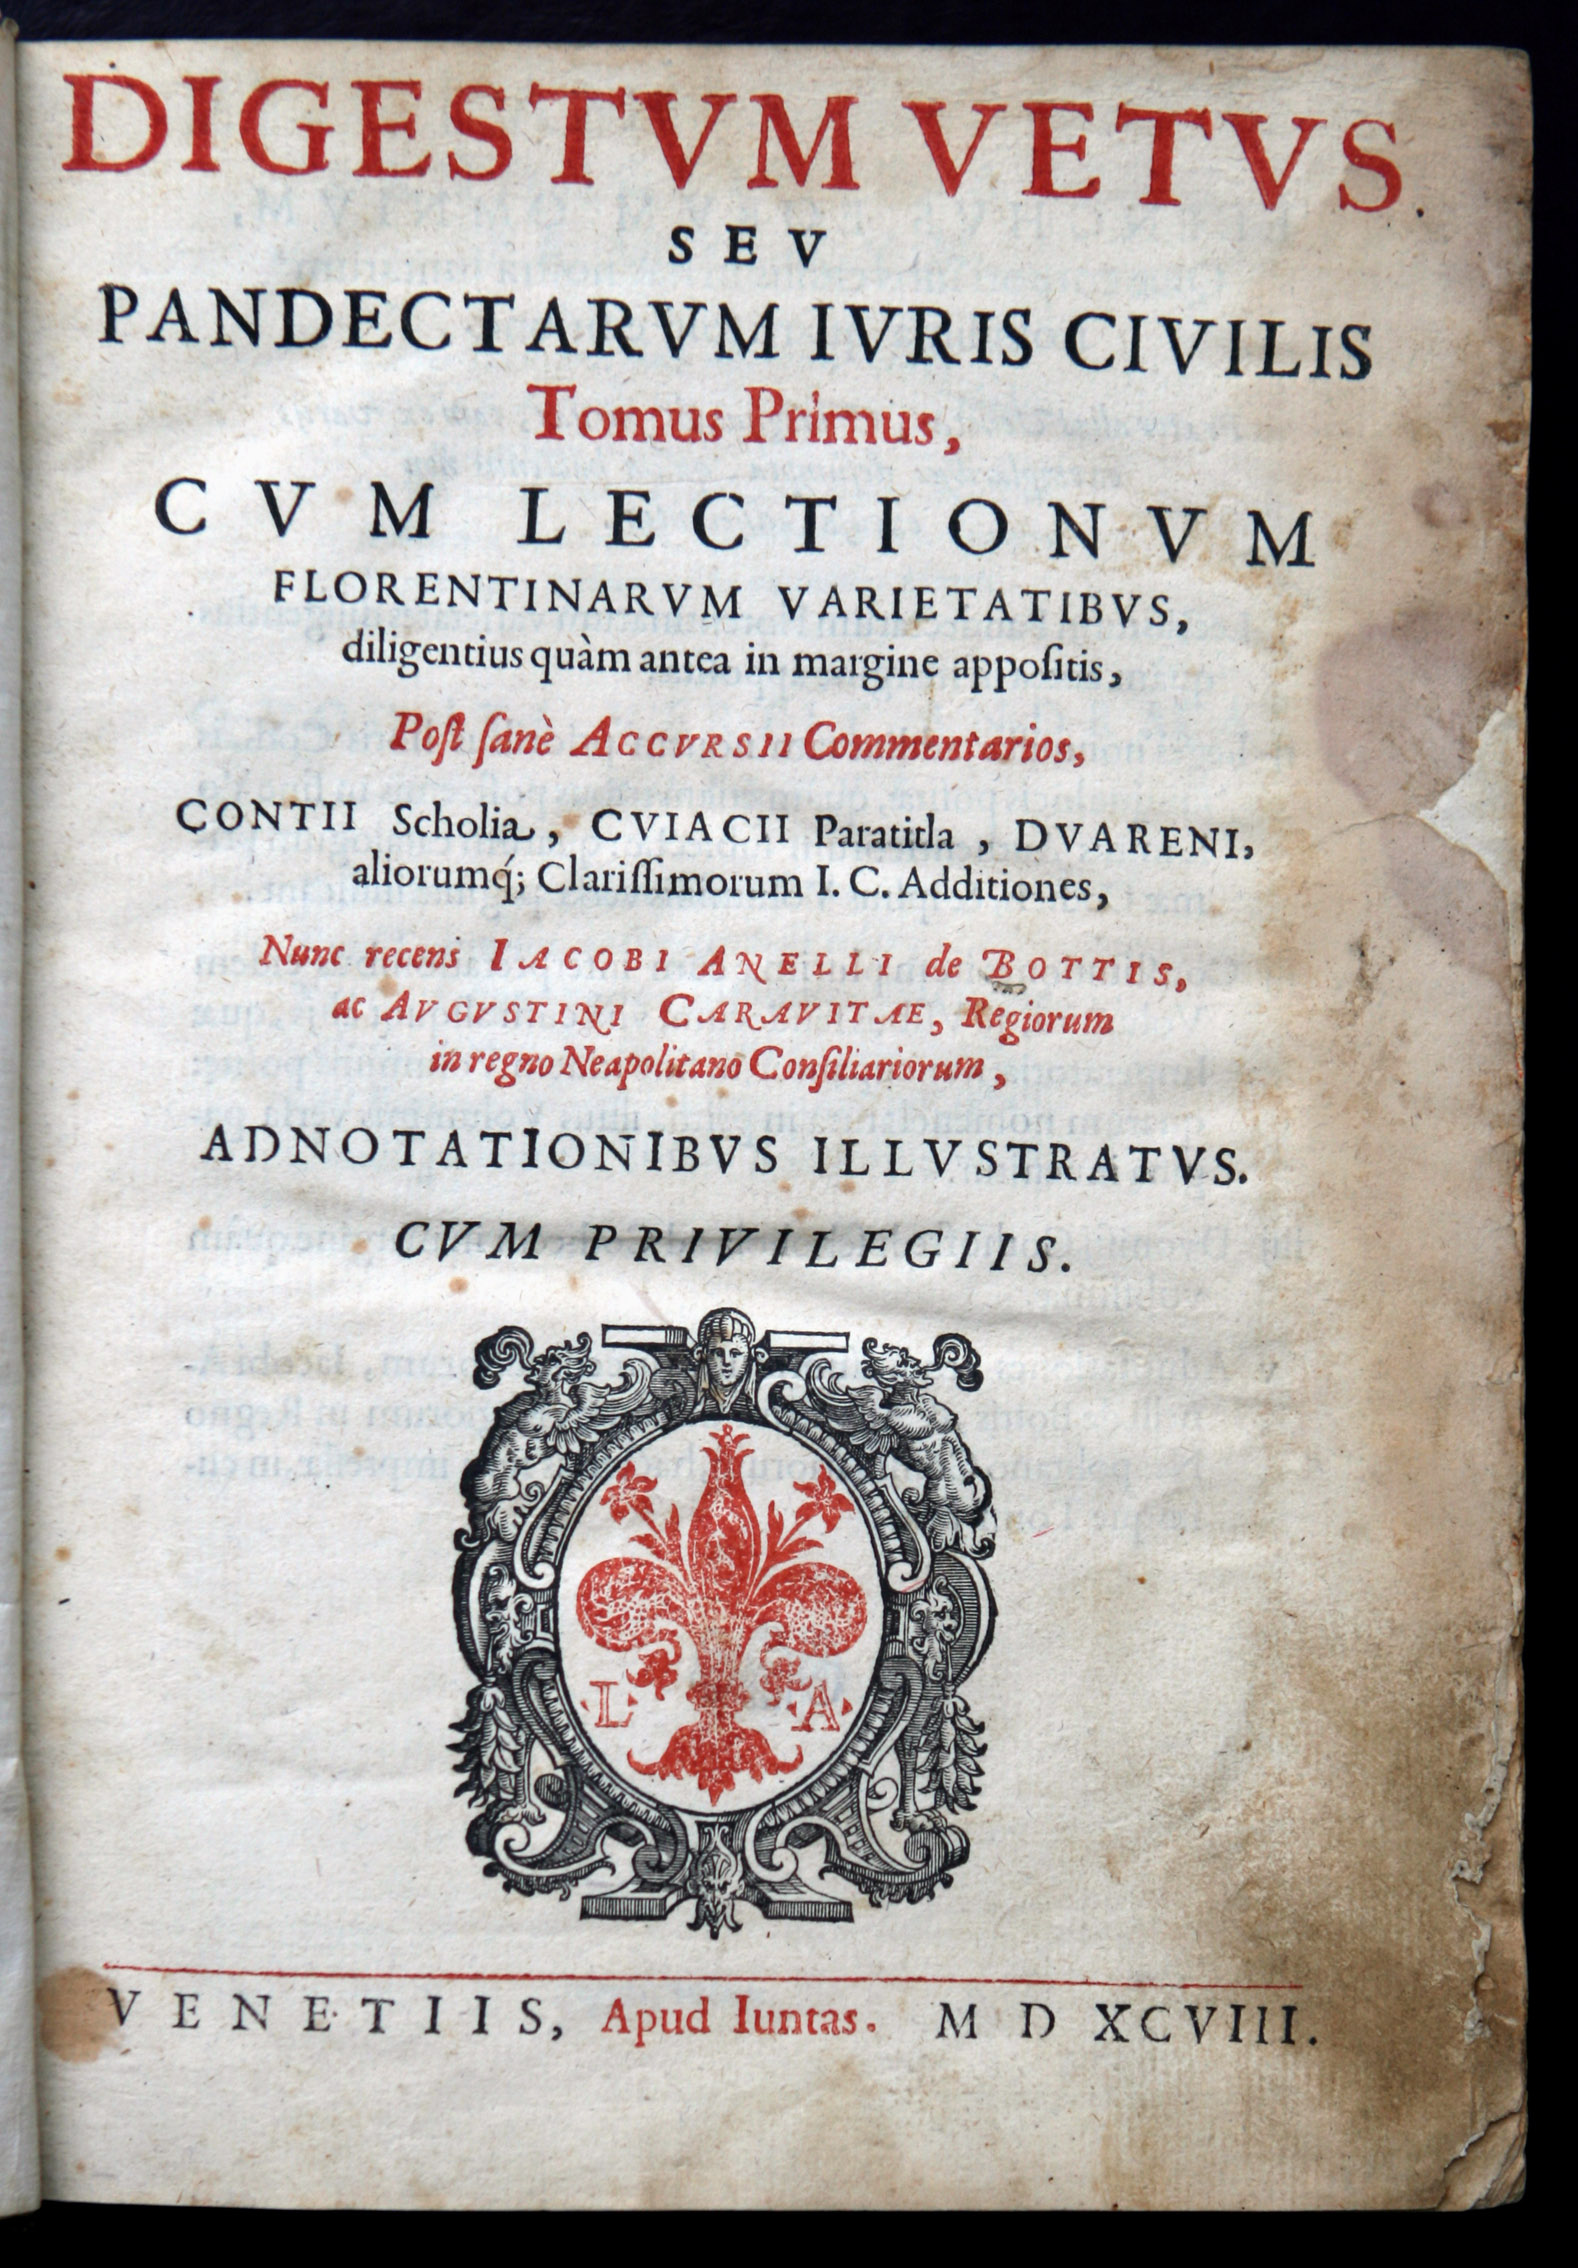 digestum vetus anno 1598